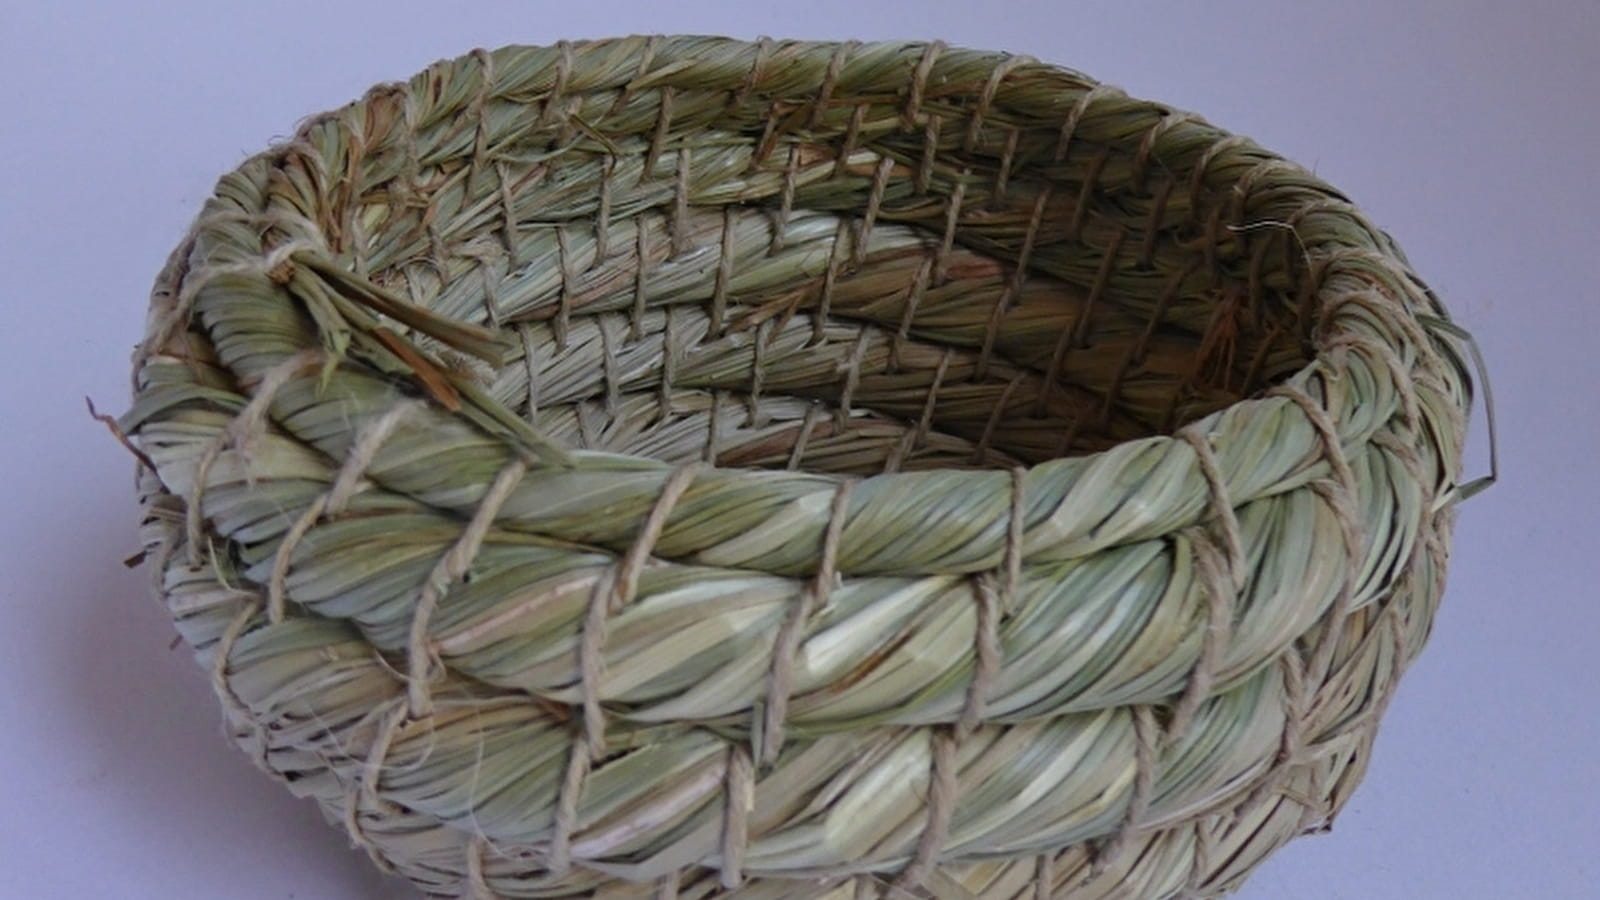 Basketry workshop